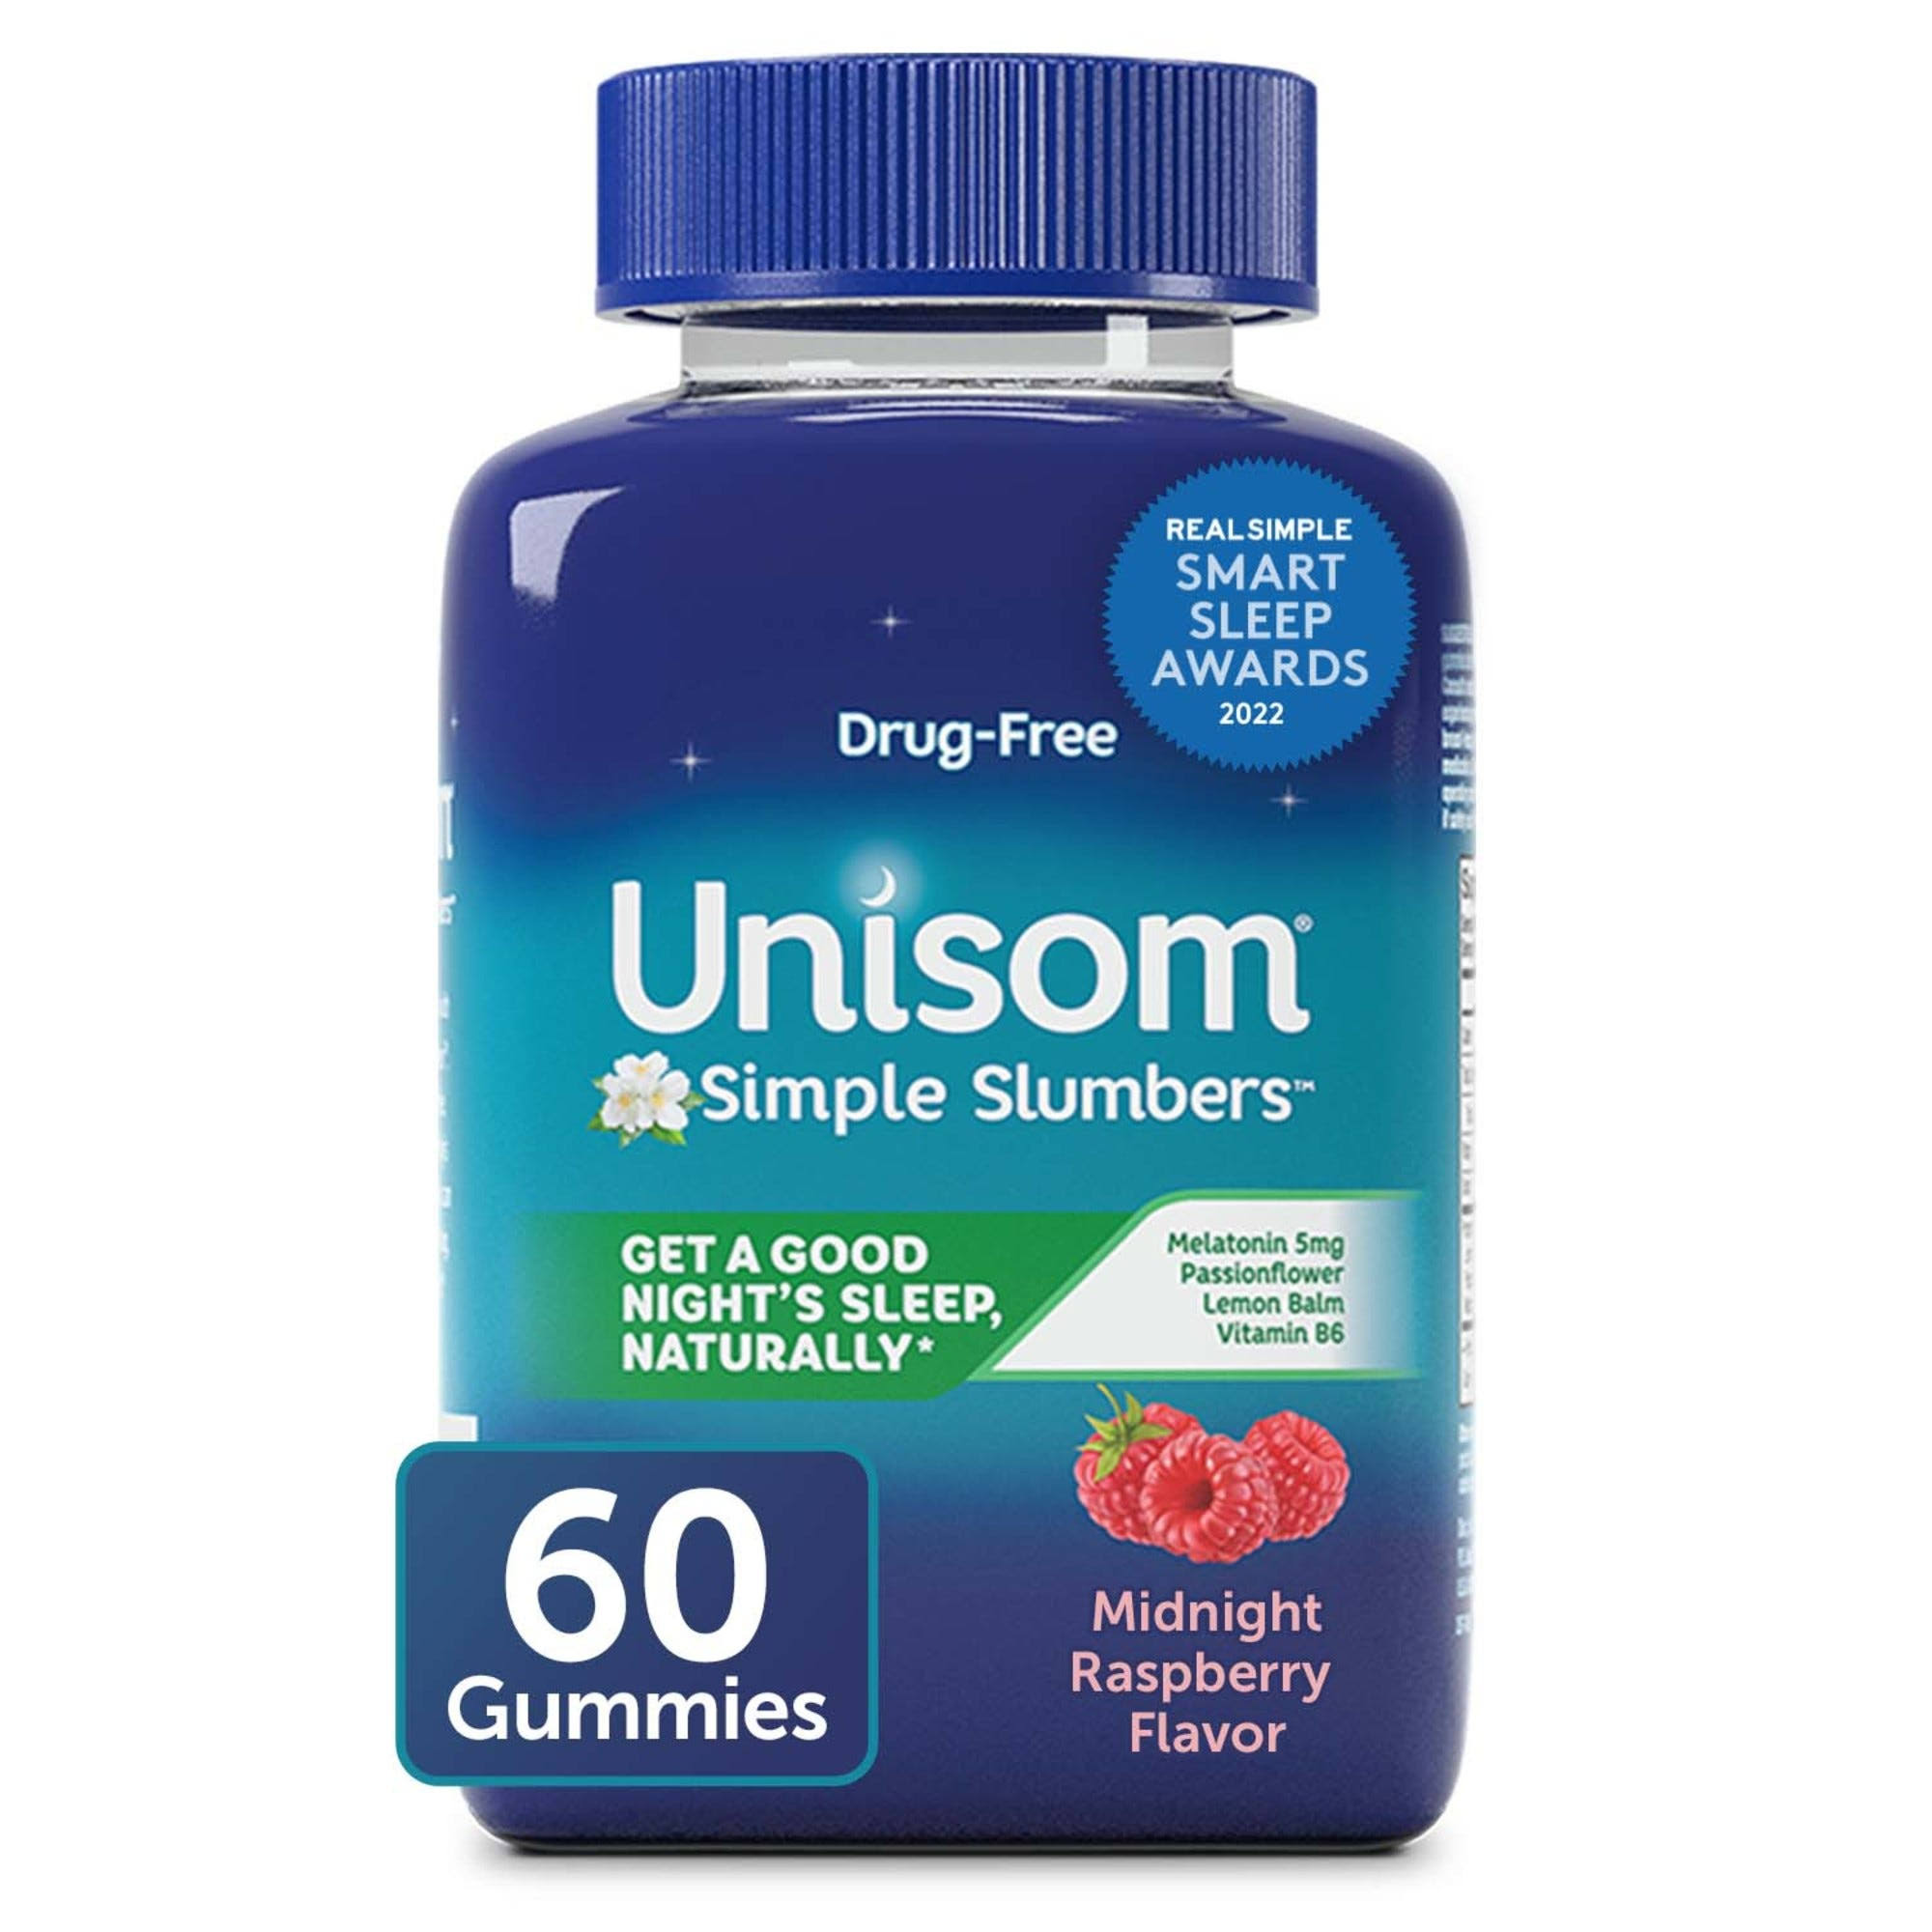 Unisom Simple Slumbers Drug-Free Sleep Aid Gummies Melatonin 5mg, Midnight 60